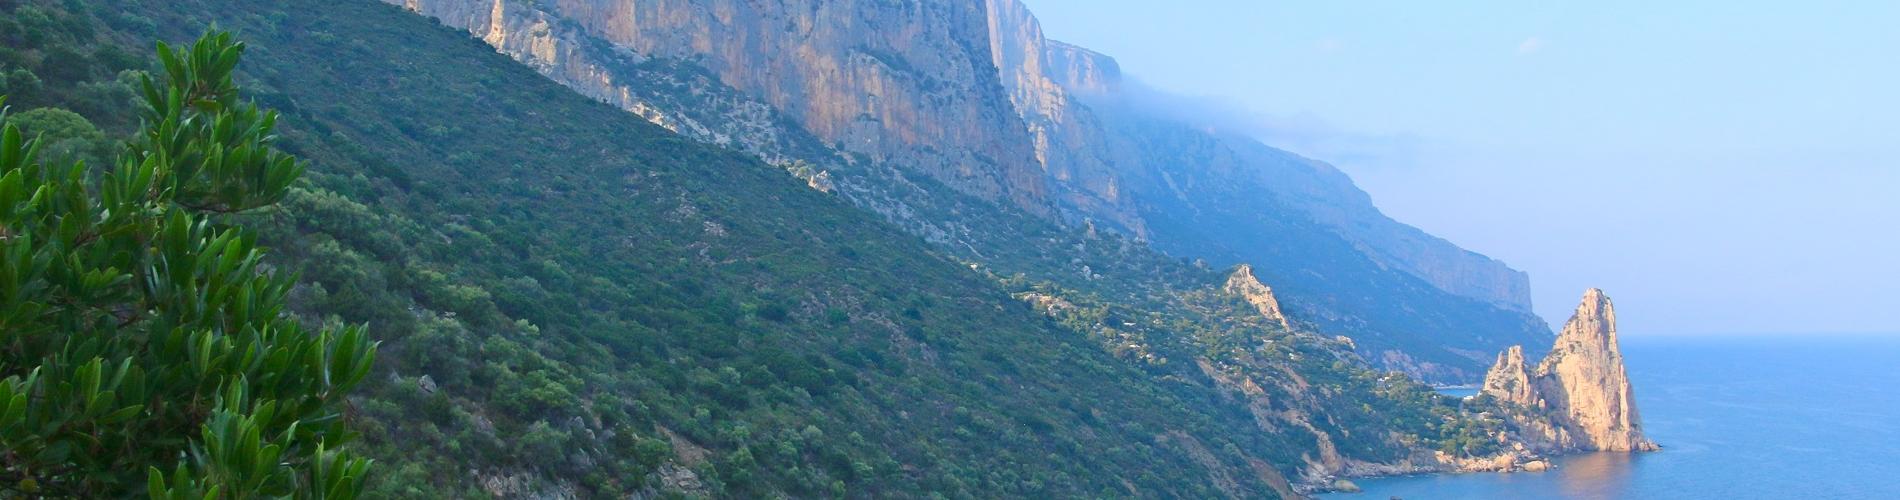 voyages aventure Sardaigne: treks et magnifiques paysages